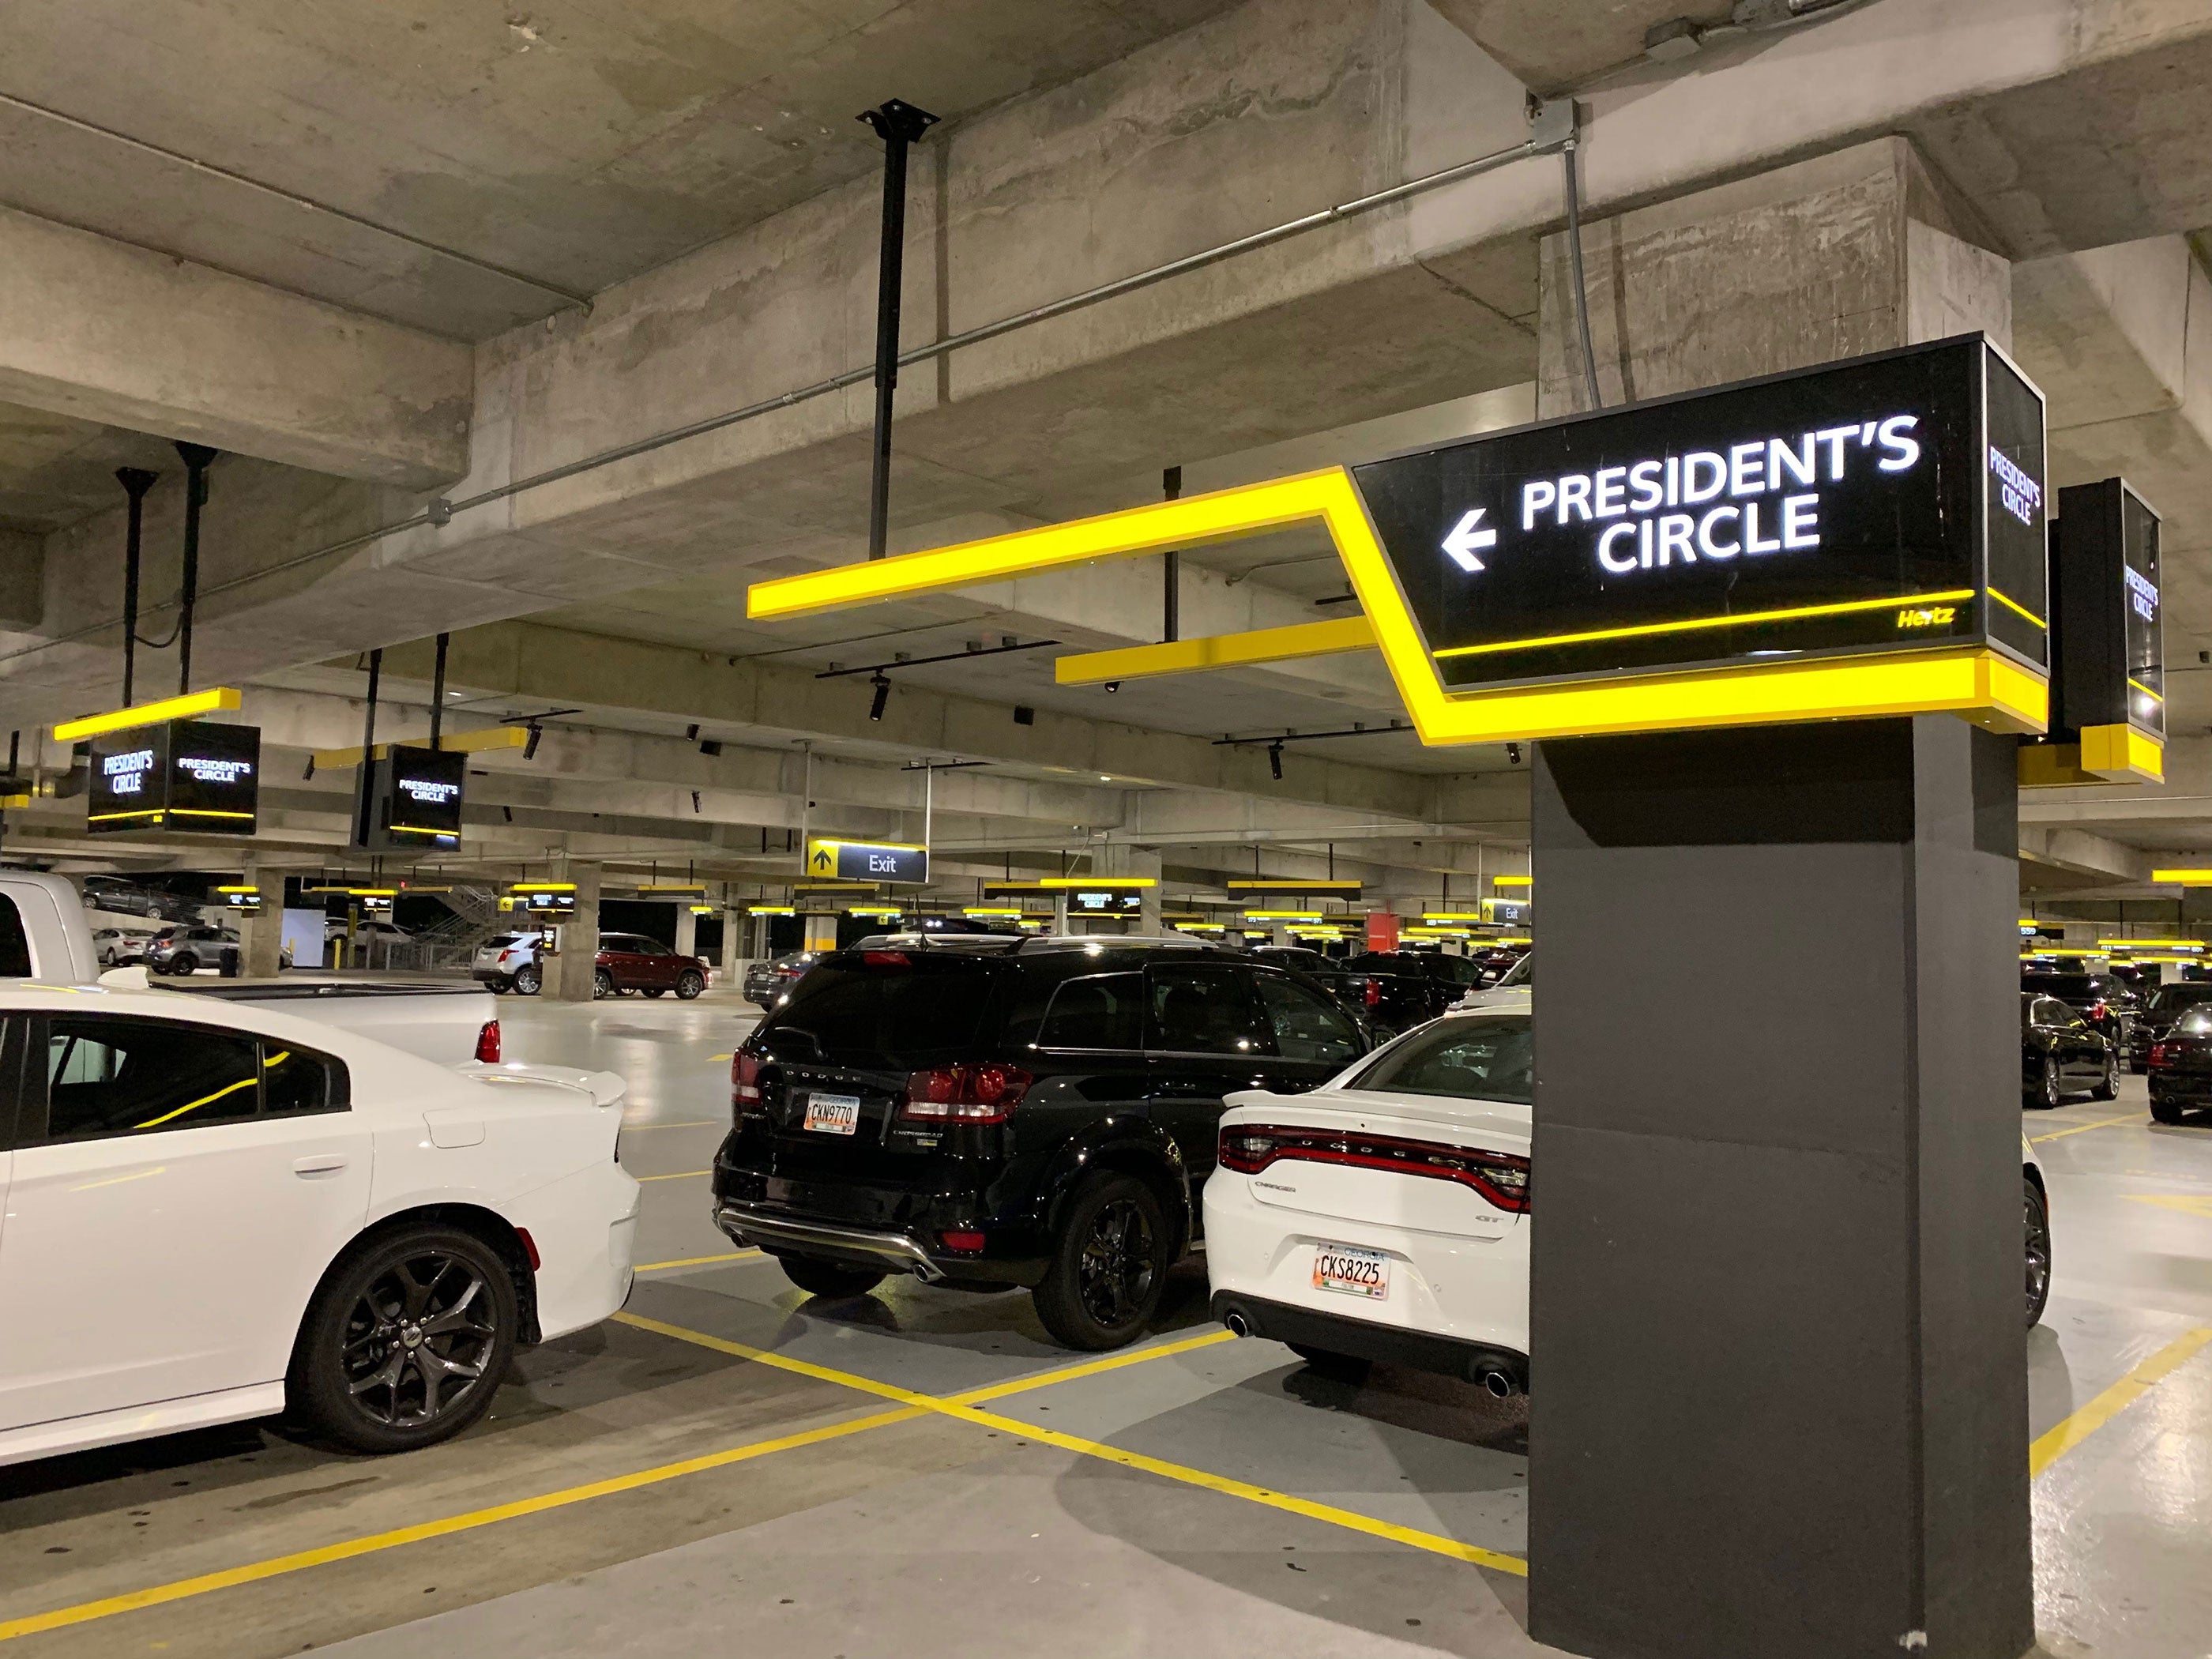 hertz-presidents-circle-garage-airport-2019